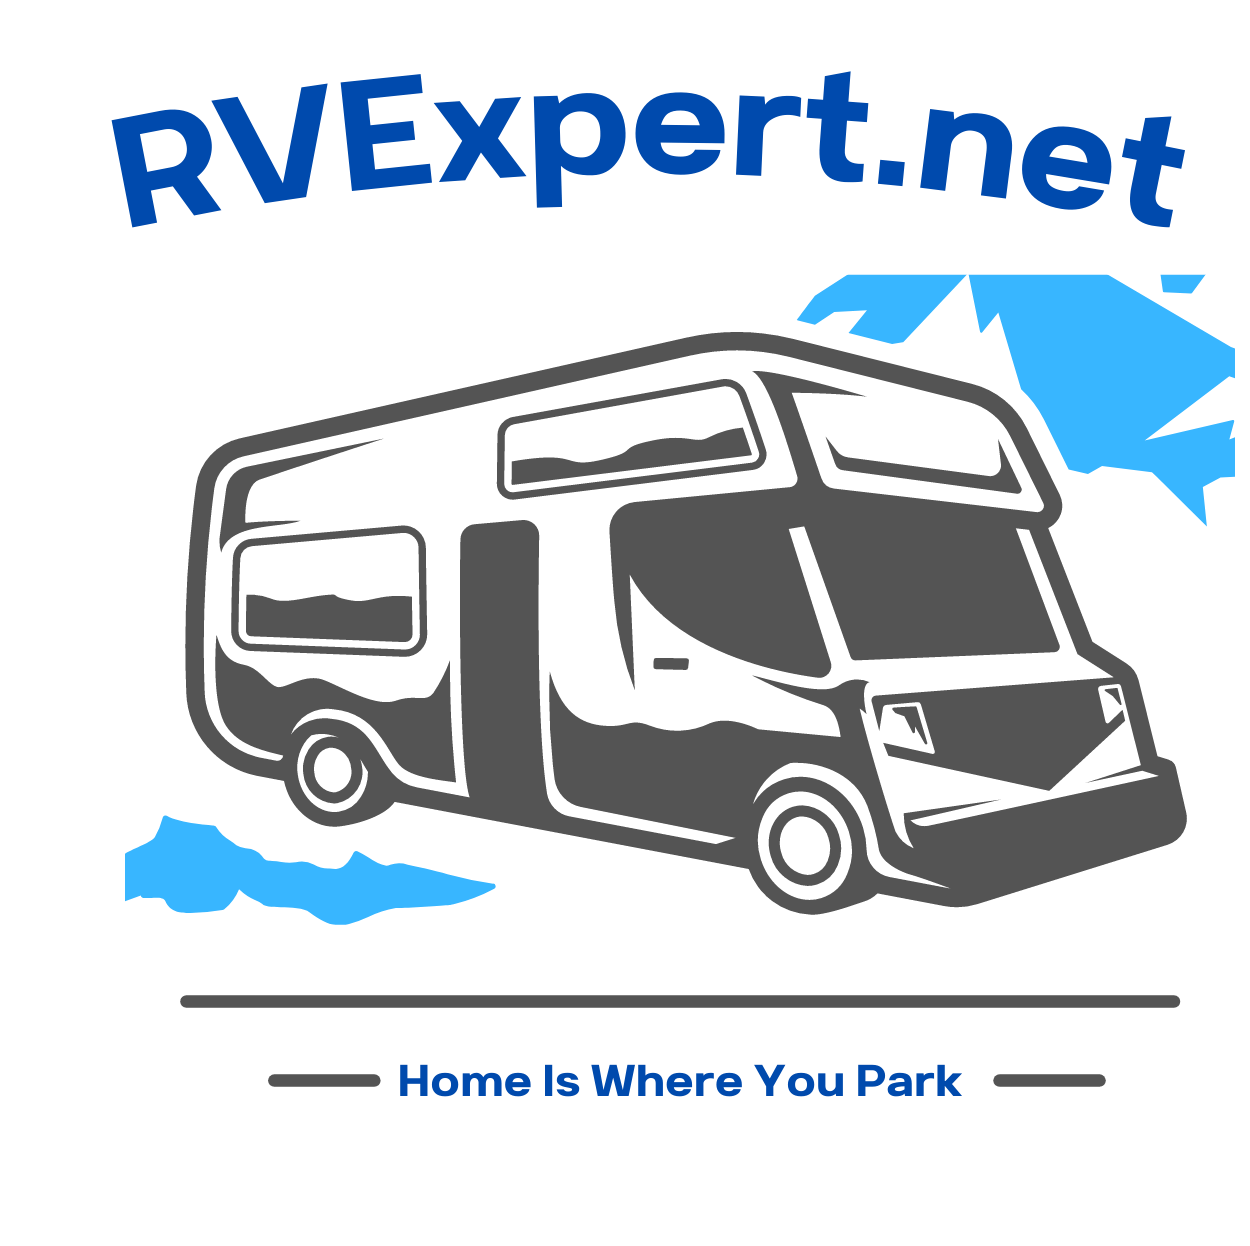 RV Expert